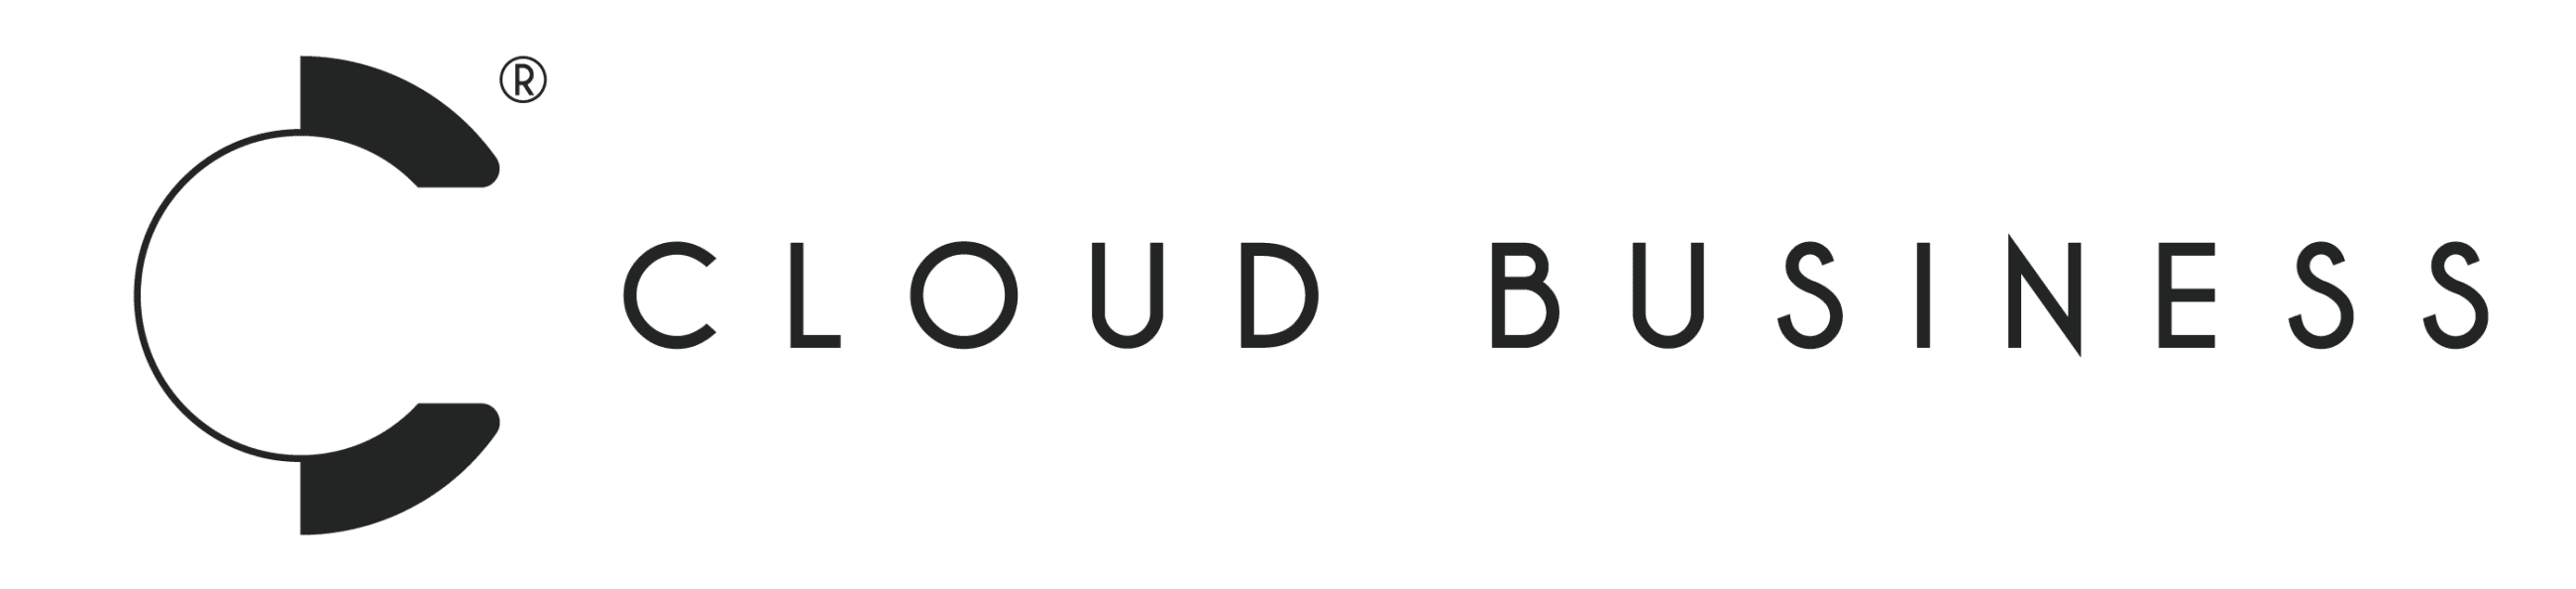 Logo Cloud Business s.r.o. - výroba www stránek